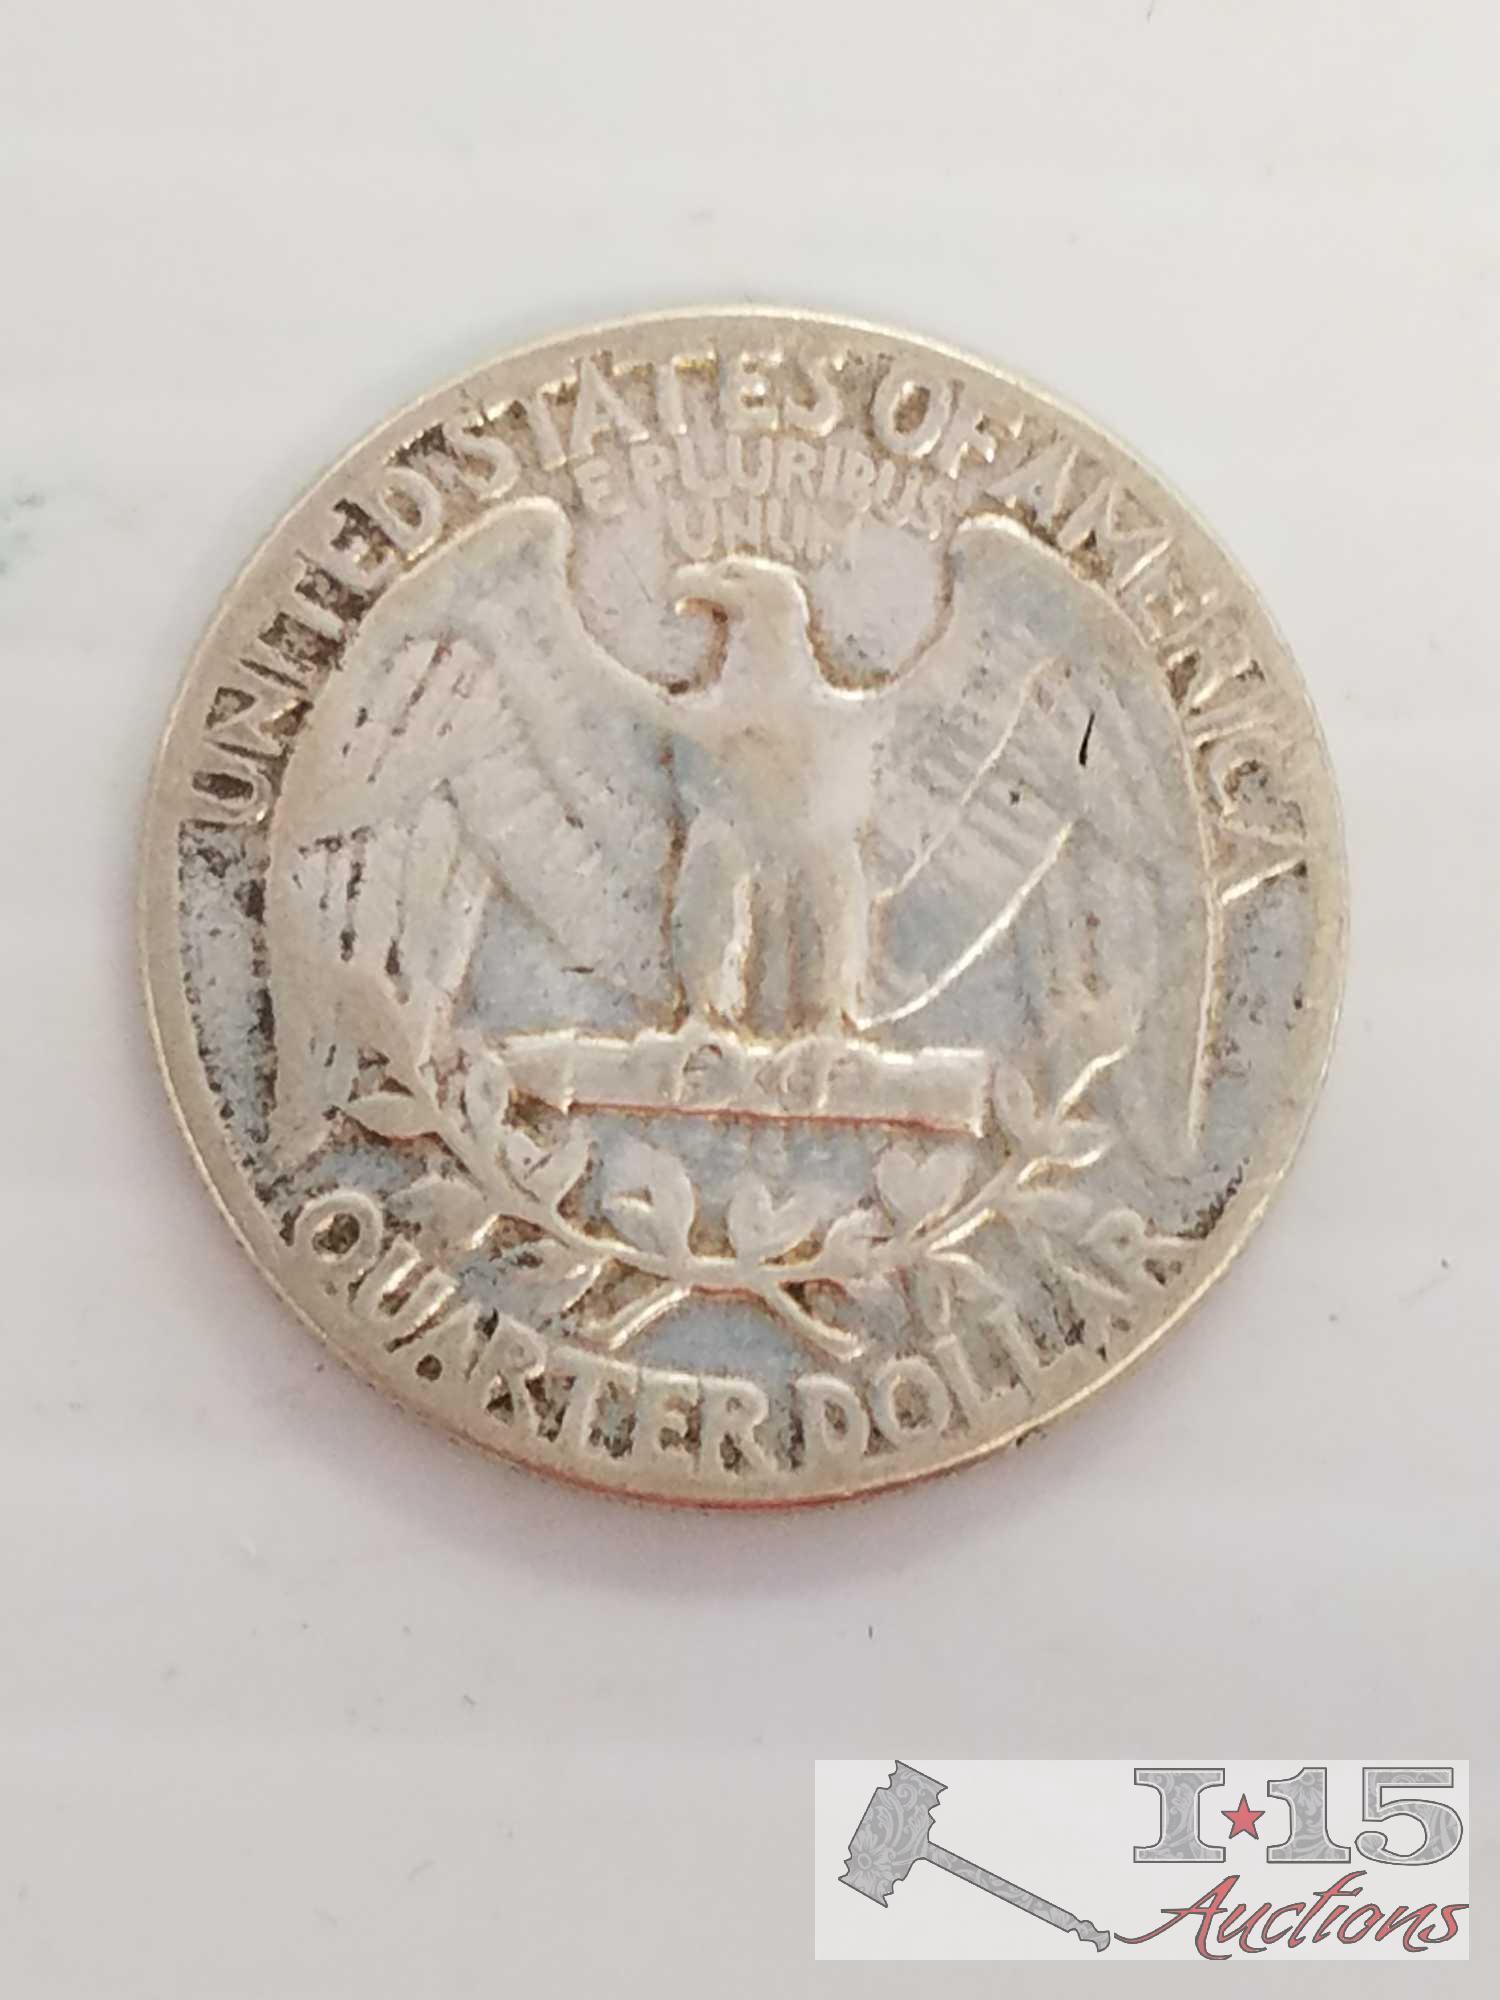 8 silver quarters: 1932 S, 1934, quantity 3 - 1951 S, 1954, 1961 D, 1964 D